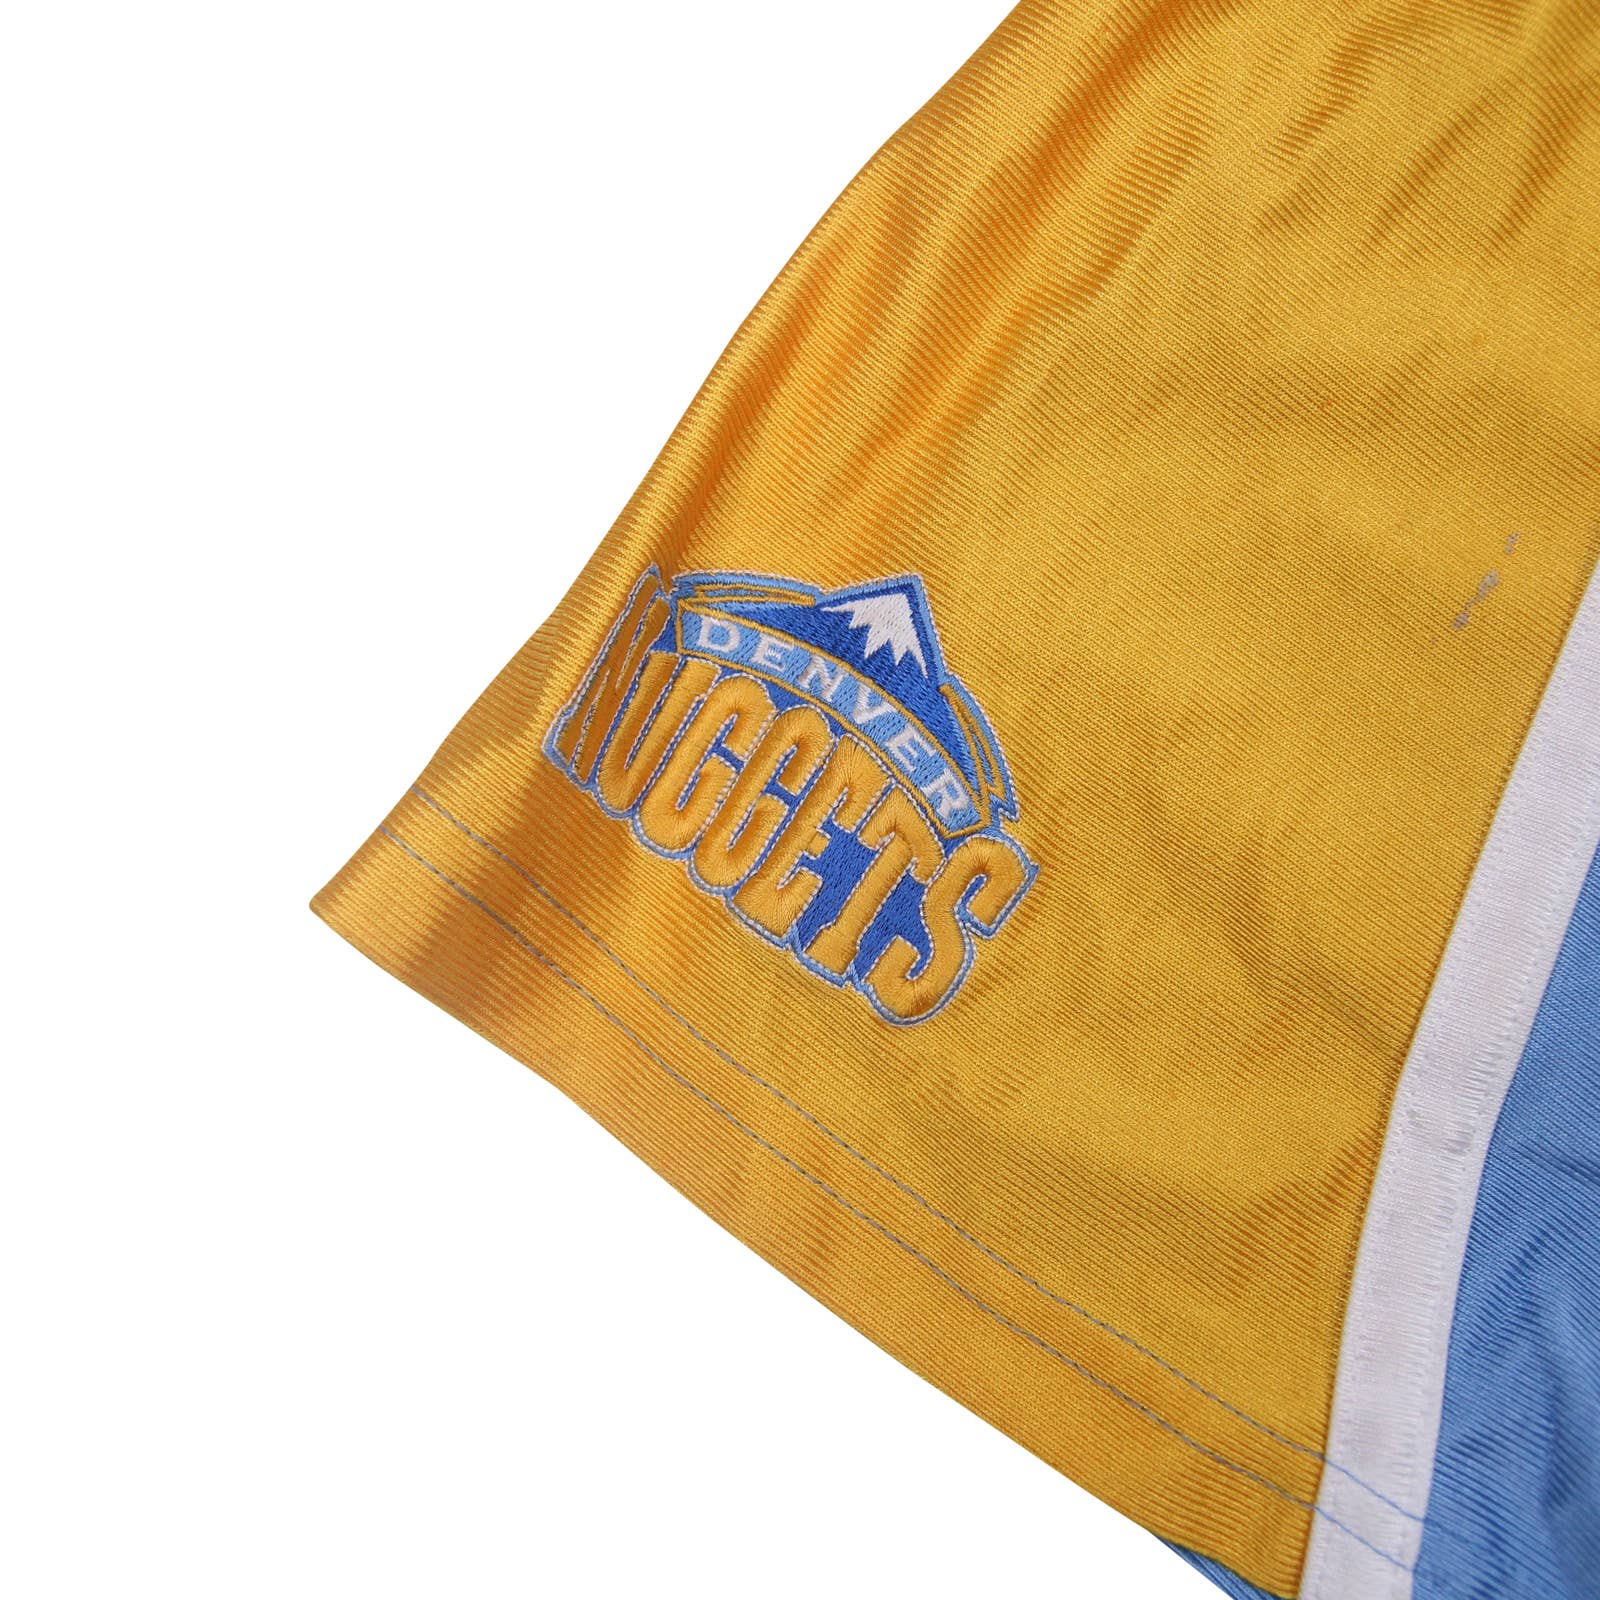 Vintage Nike Denver Nuggets Basketball Shorts - M – Jak of all Vintage